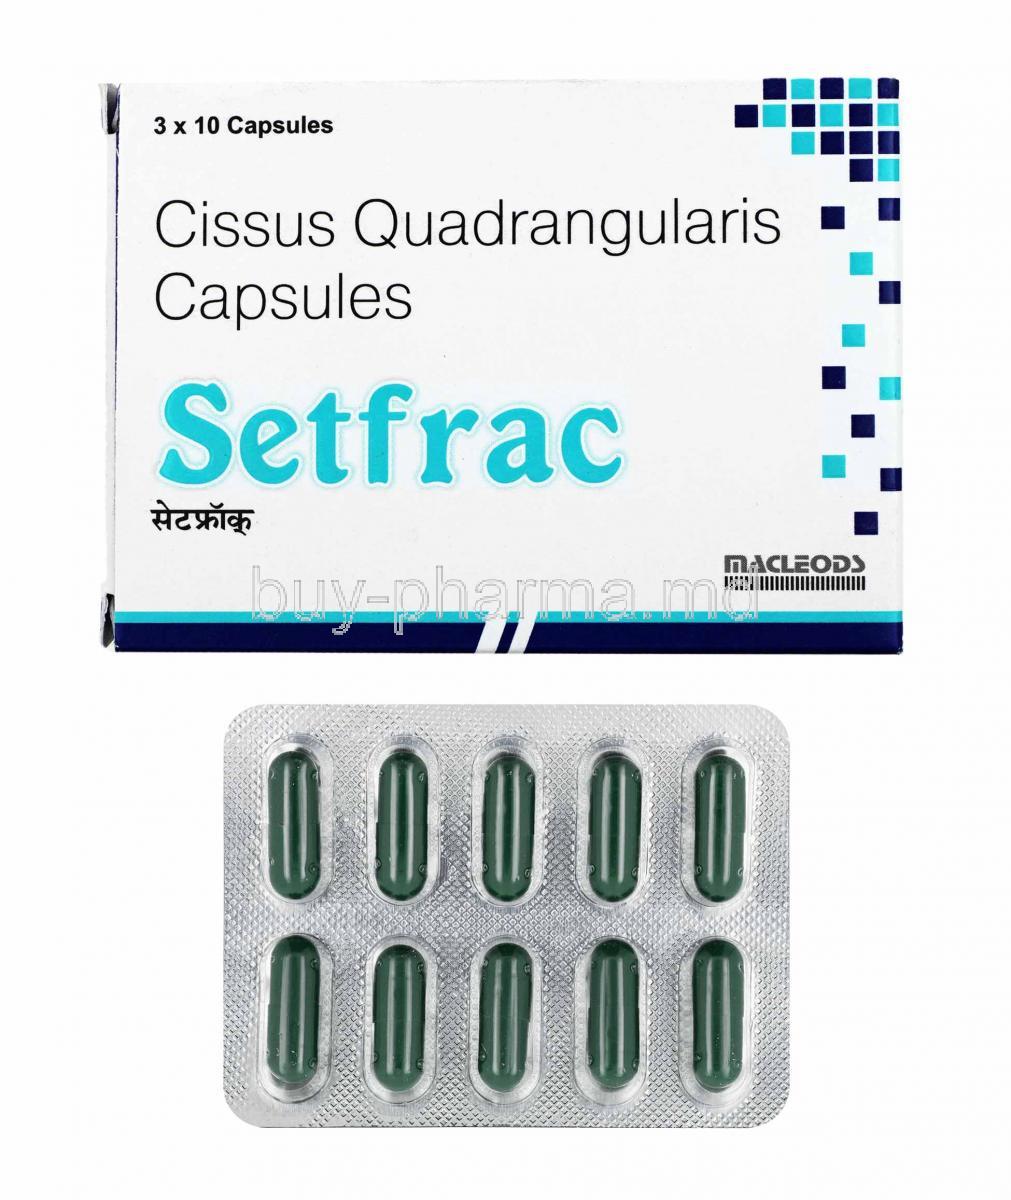 Setfrac, Cissus Quadrangularis box and capsules